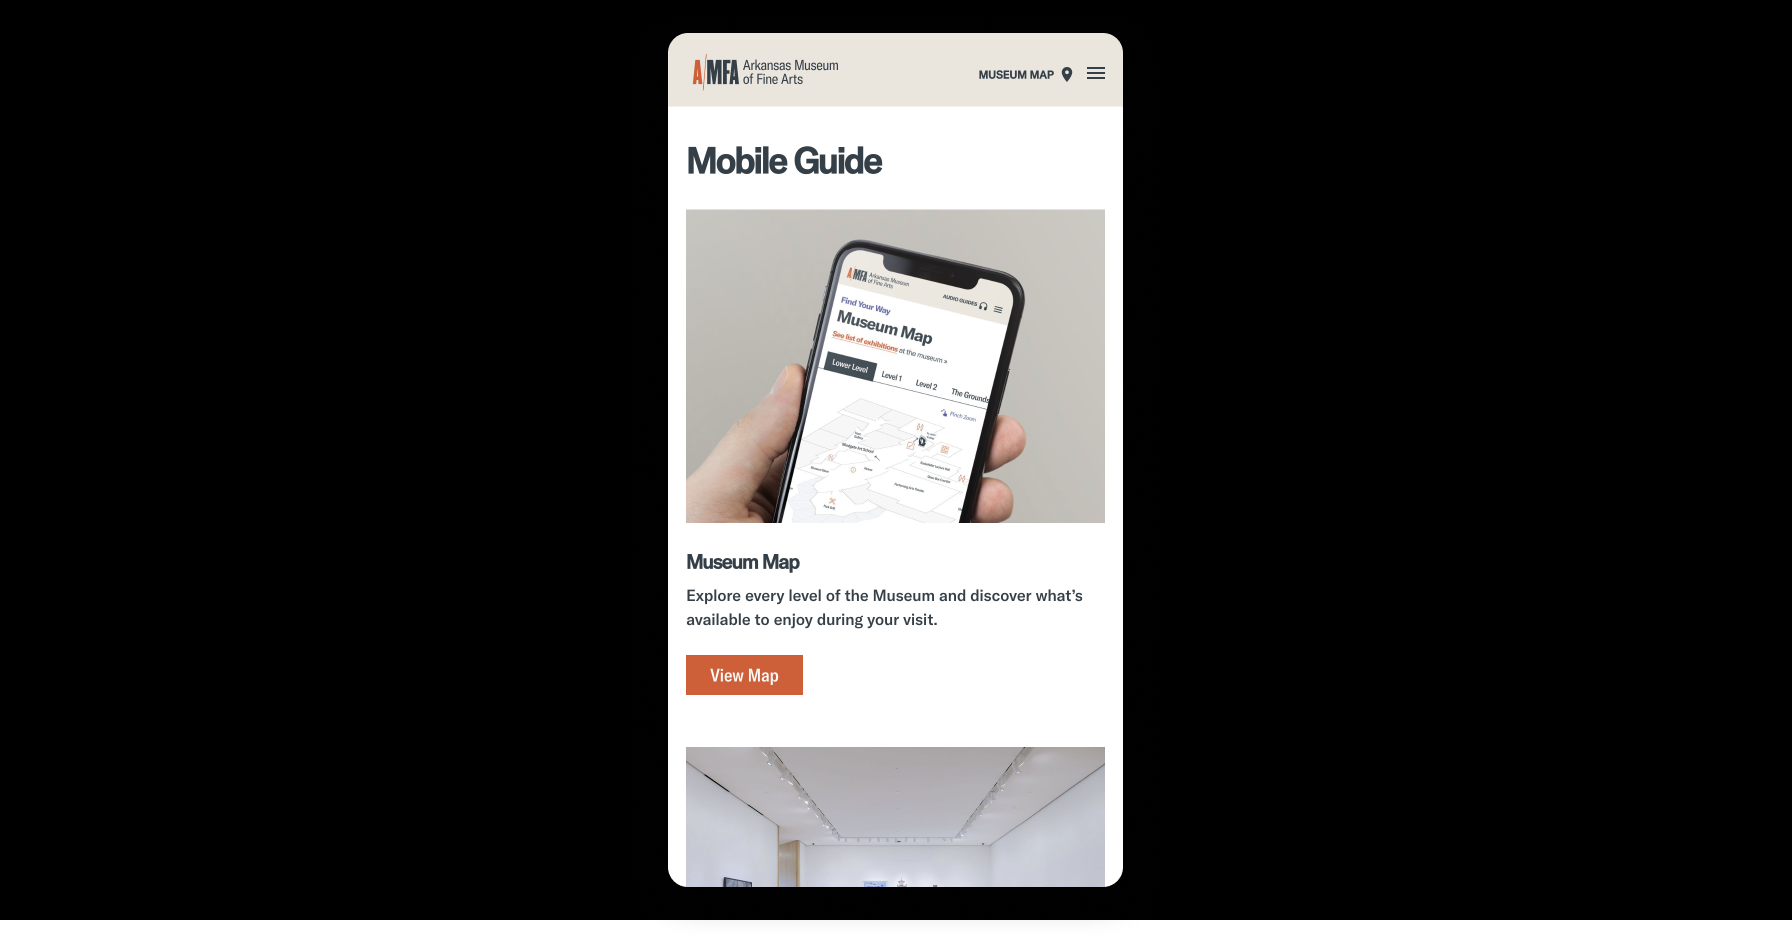 AMFA Mobile Guide